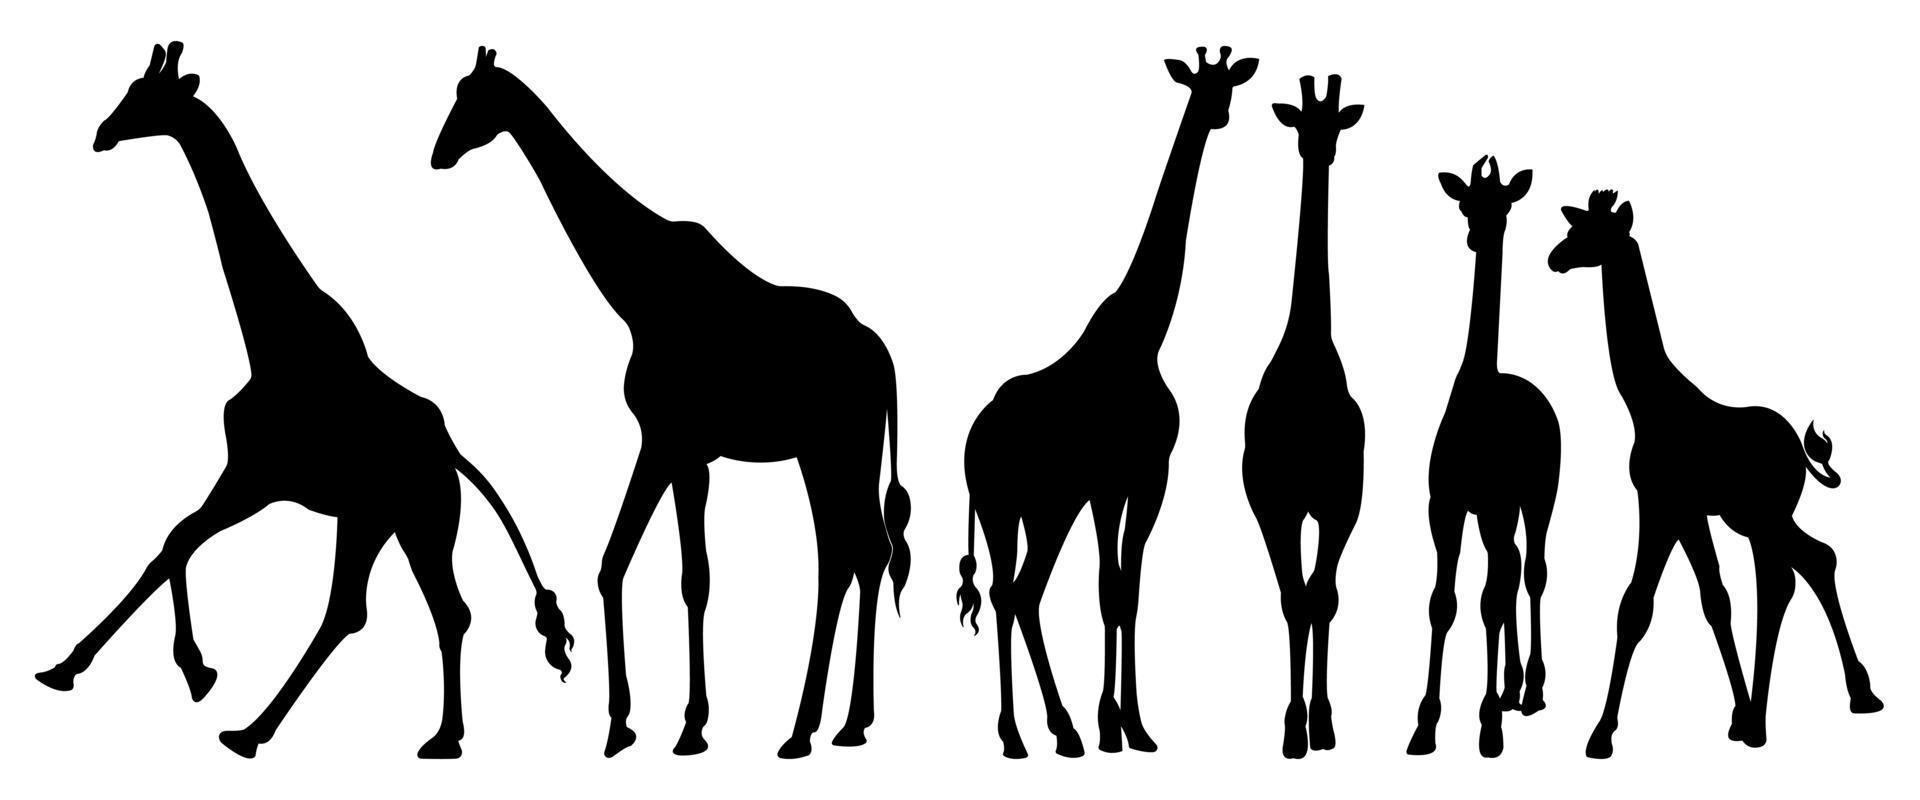 en uppsättning giraff vektor silhuetter isolerad på en vit bakgrund.